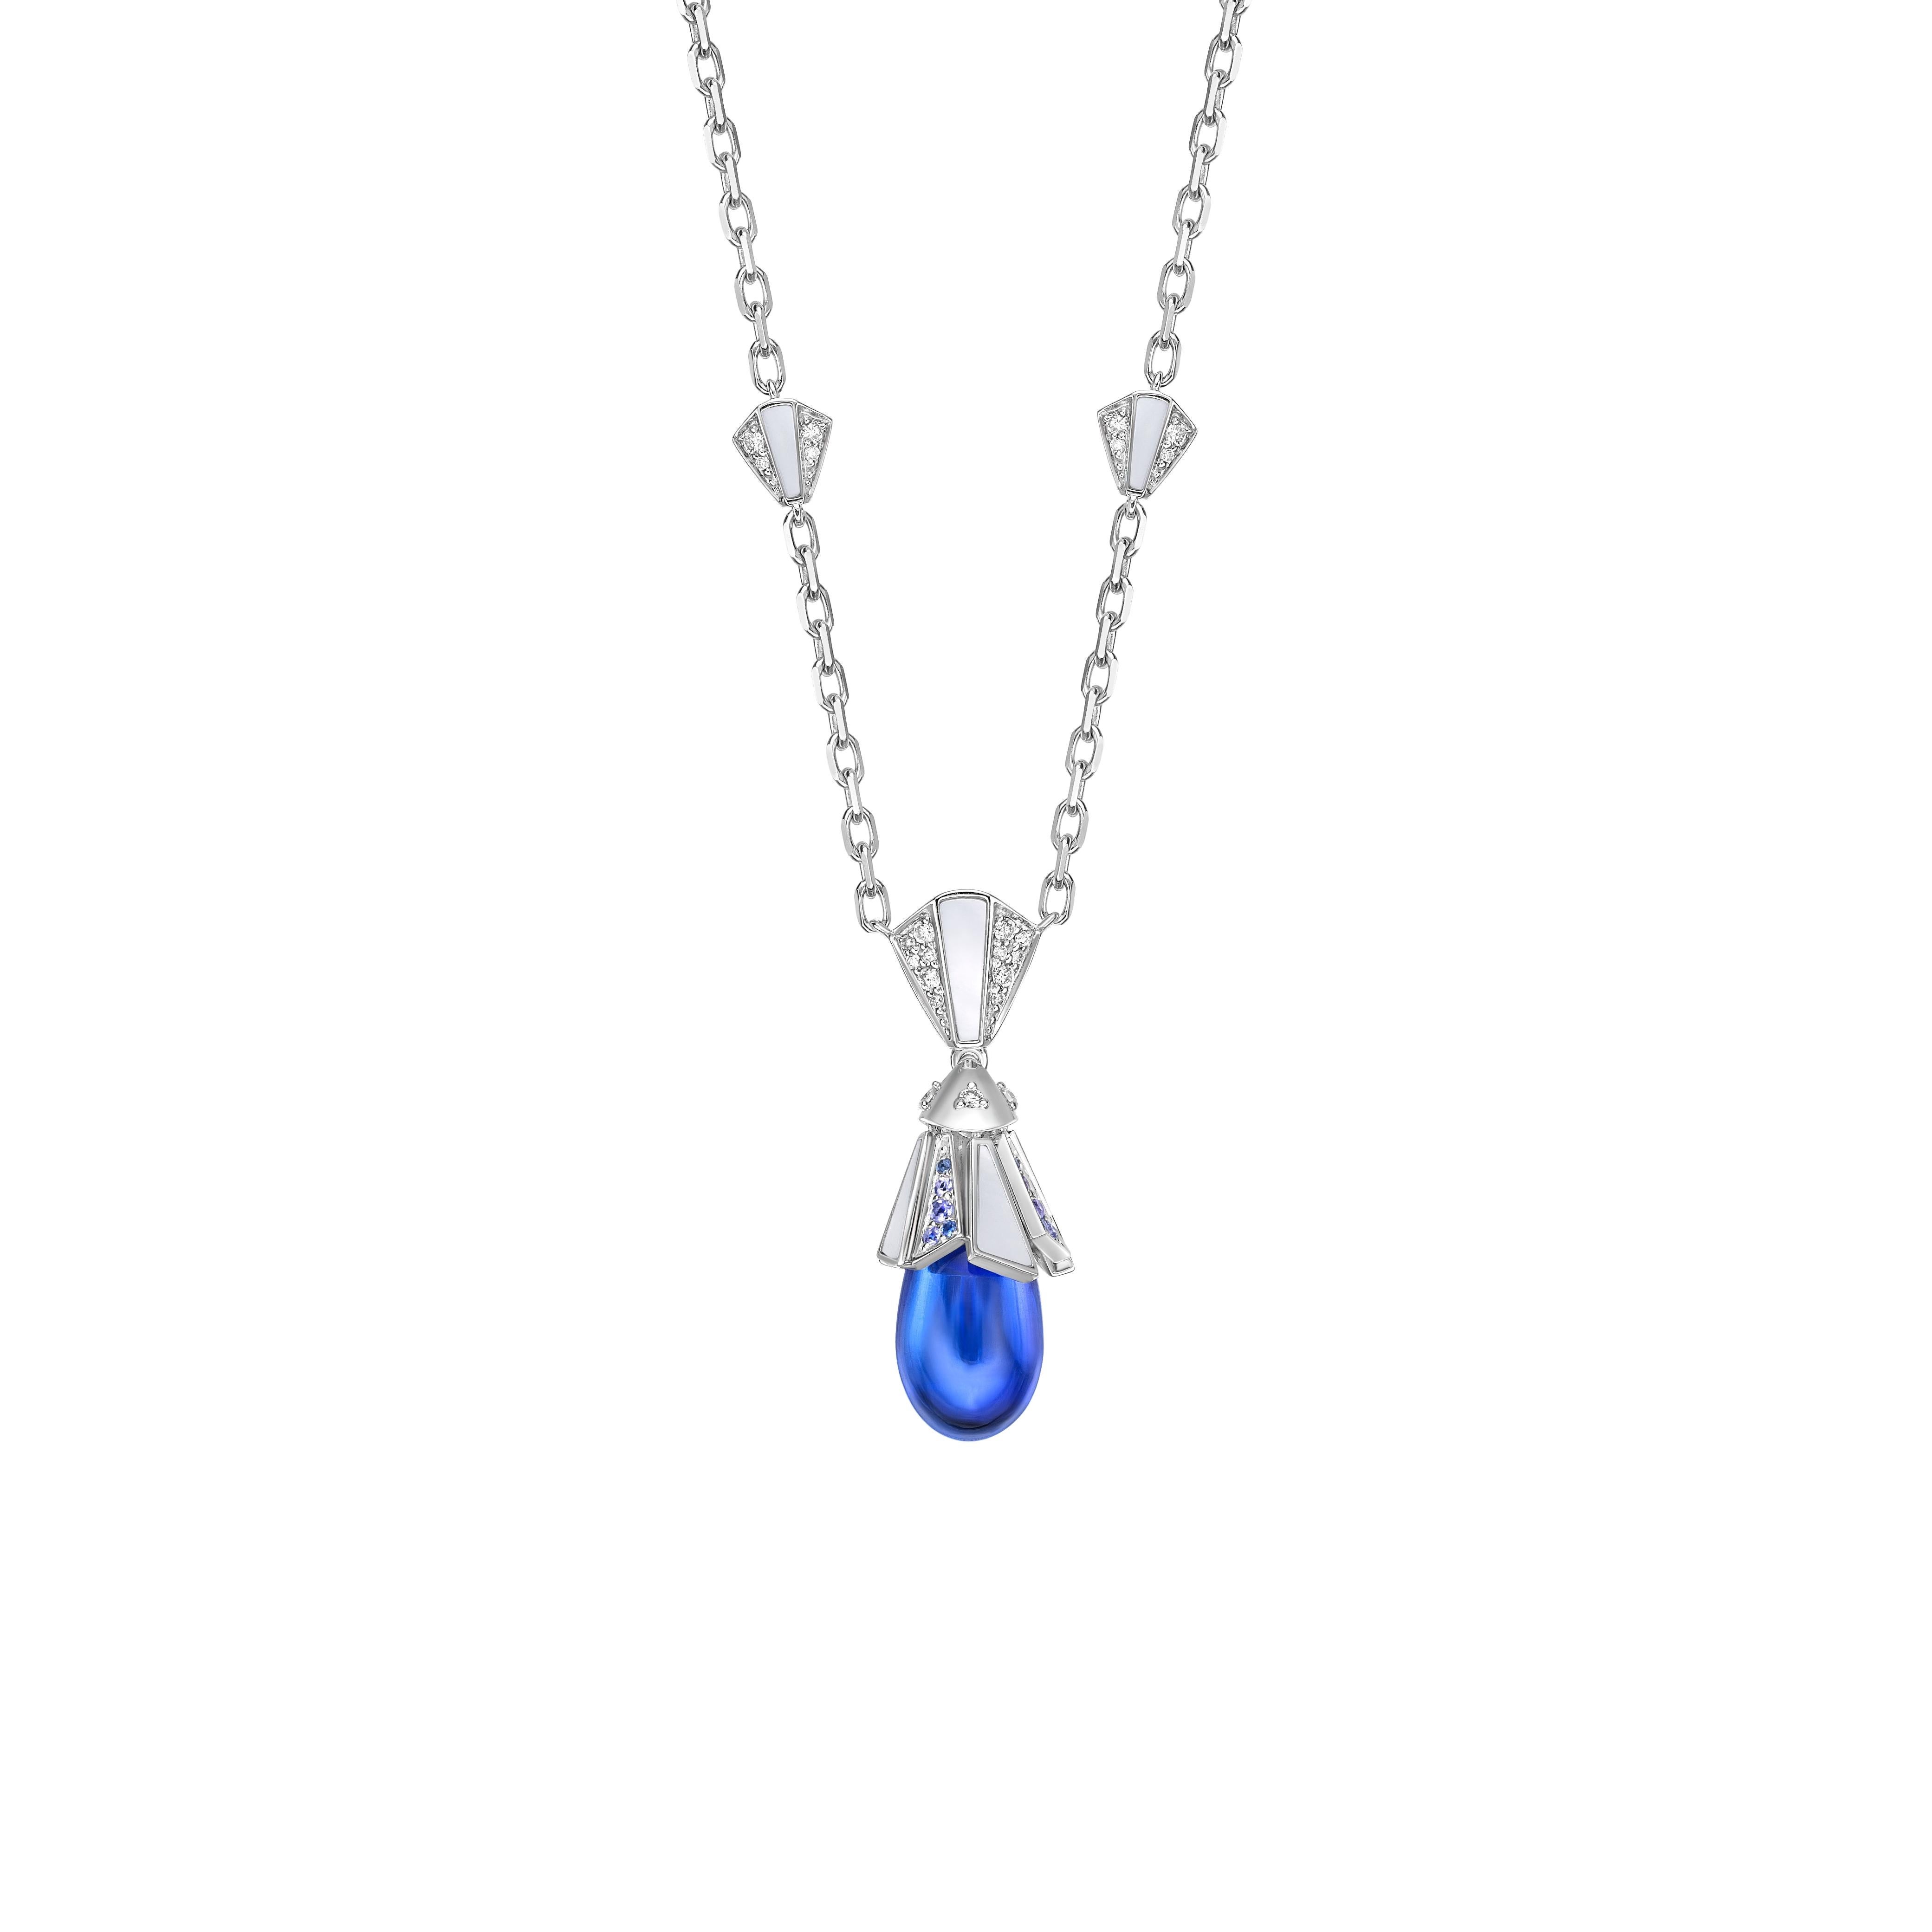 Le pendentif présente une pierre en forme de goutte d'eau de couleur tanzanite, ornée de perles de nacre. Réalisée en or blanc et sertie de diamants et de saphir bleu, elle convient à toutes les fonctions et à tous les moments particuliers.

Collier